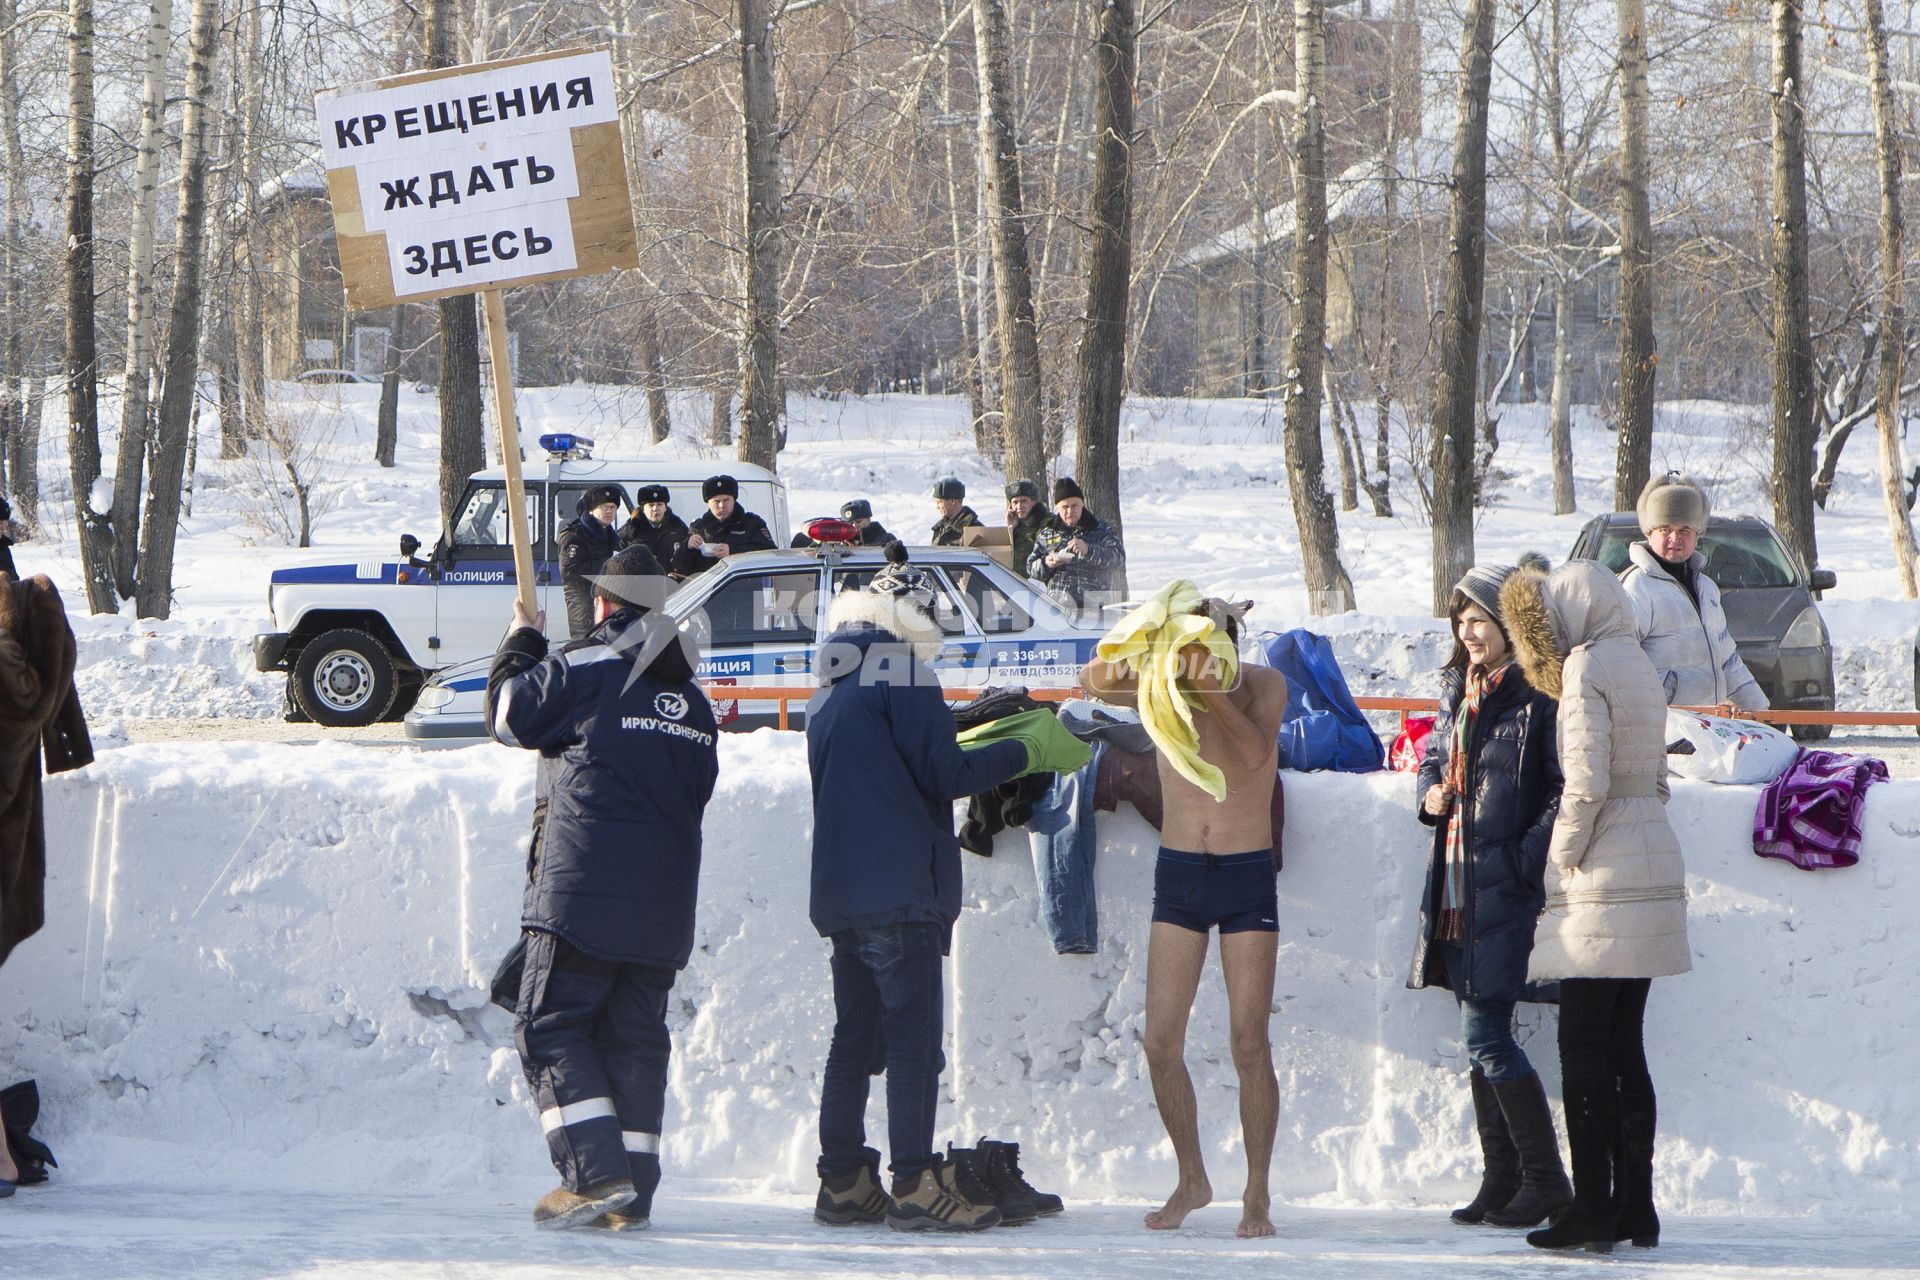 Крещенские купания в Иркутске. На снимке: мужчина держит табличку `Крещения ждать здесь`.